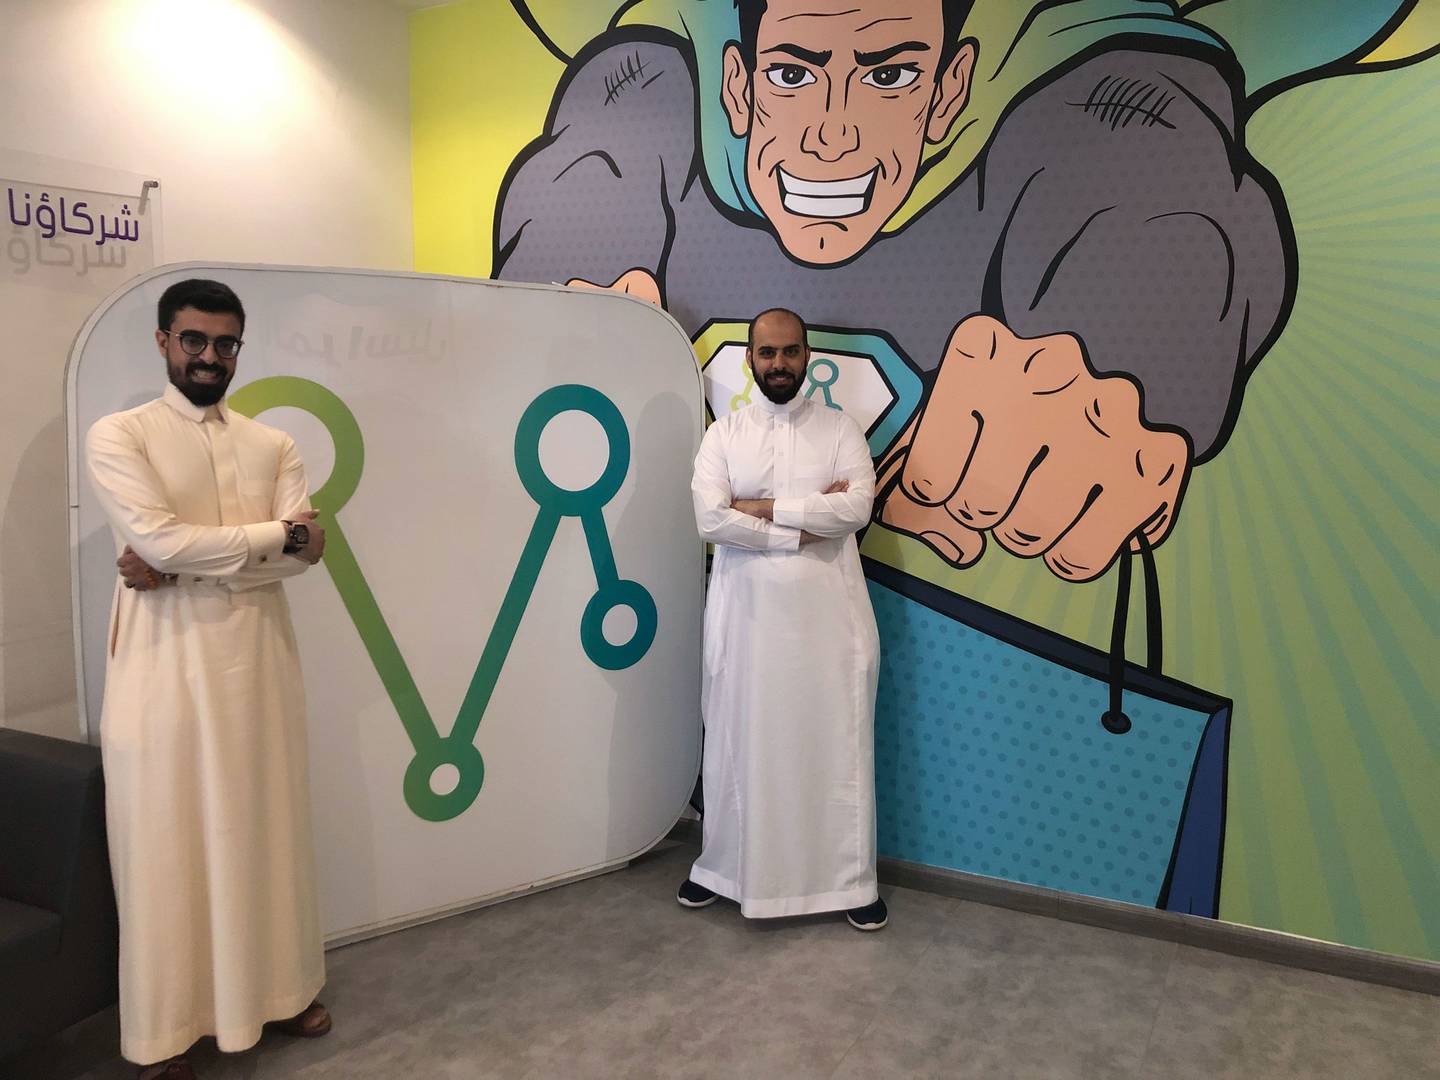 En sus oficinas de Riad, Arabia Saudita.